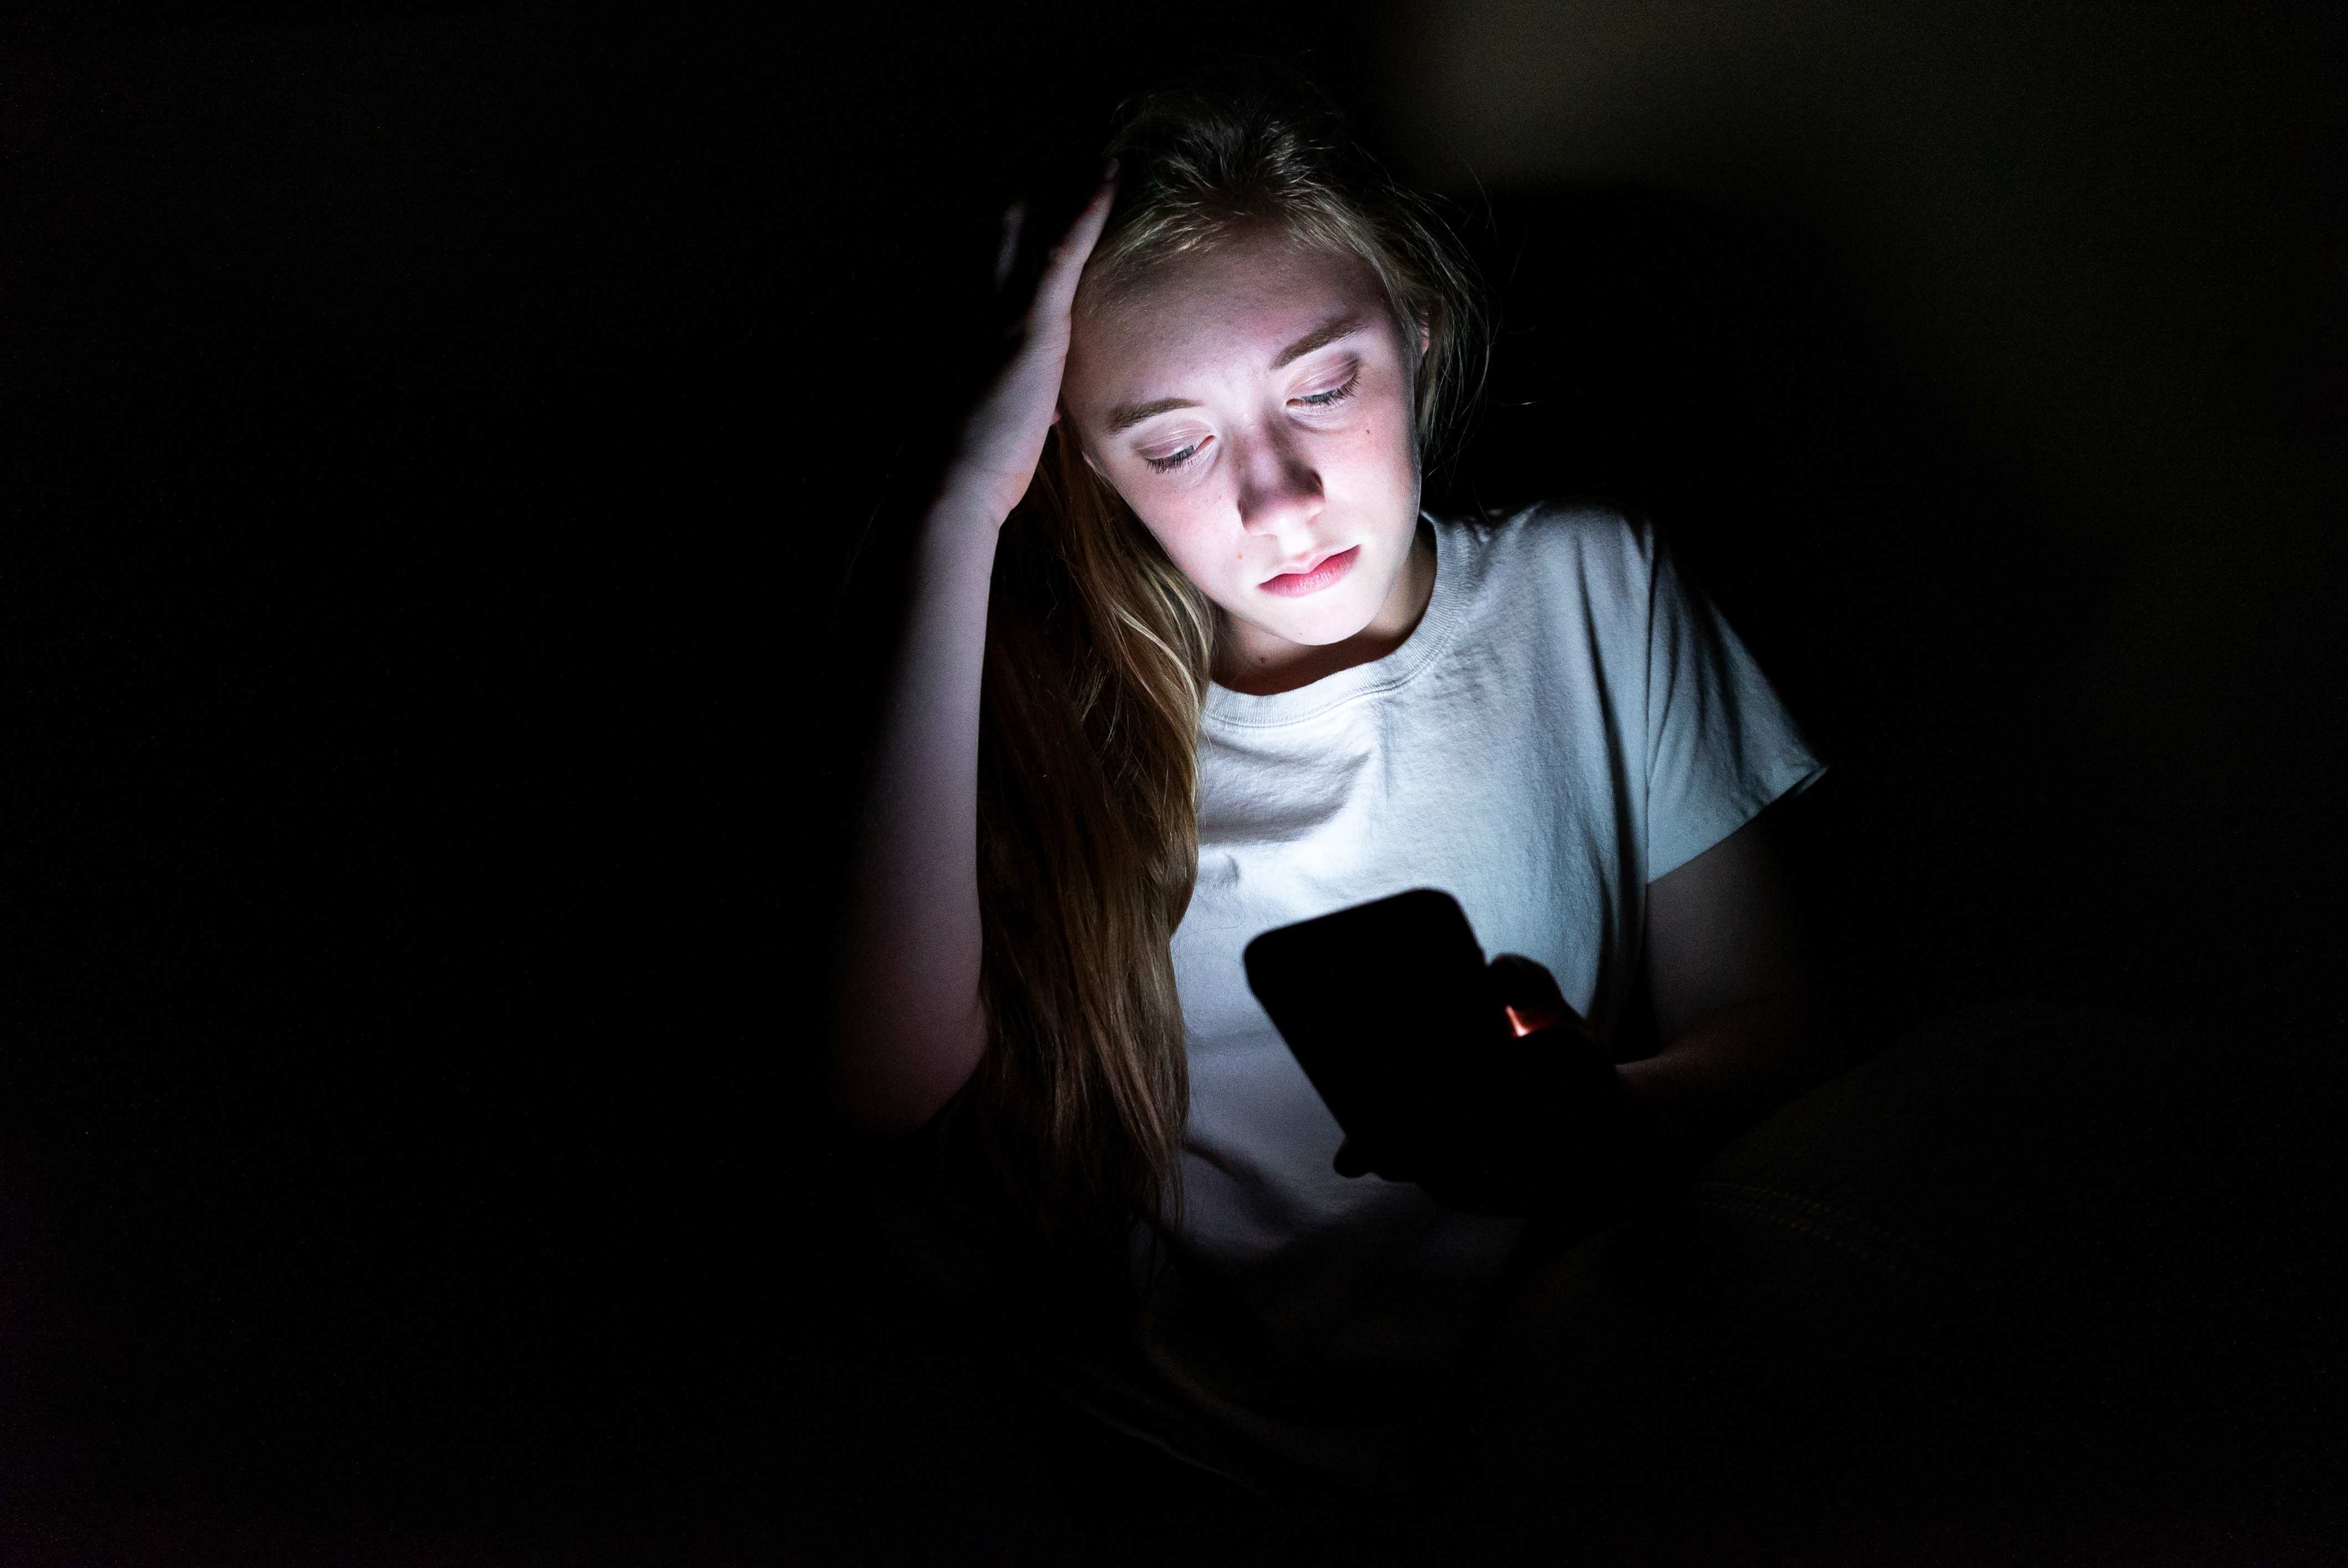 Mädchen schaut im Dunkeln auf ihr Smartphone (Quelle: Brian/Adobe Stock)